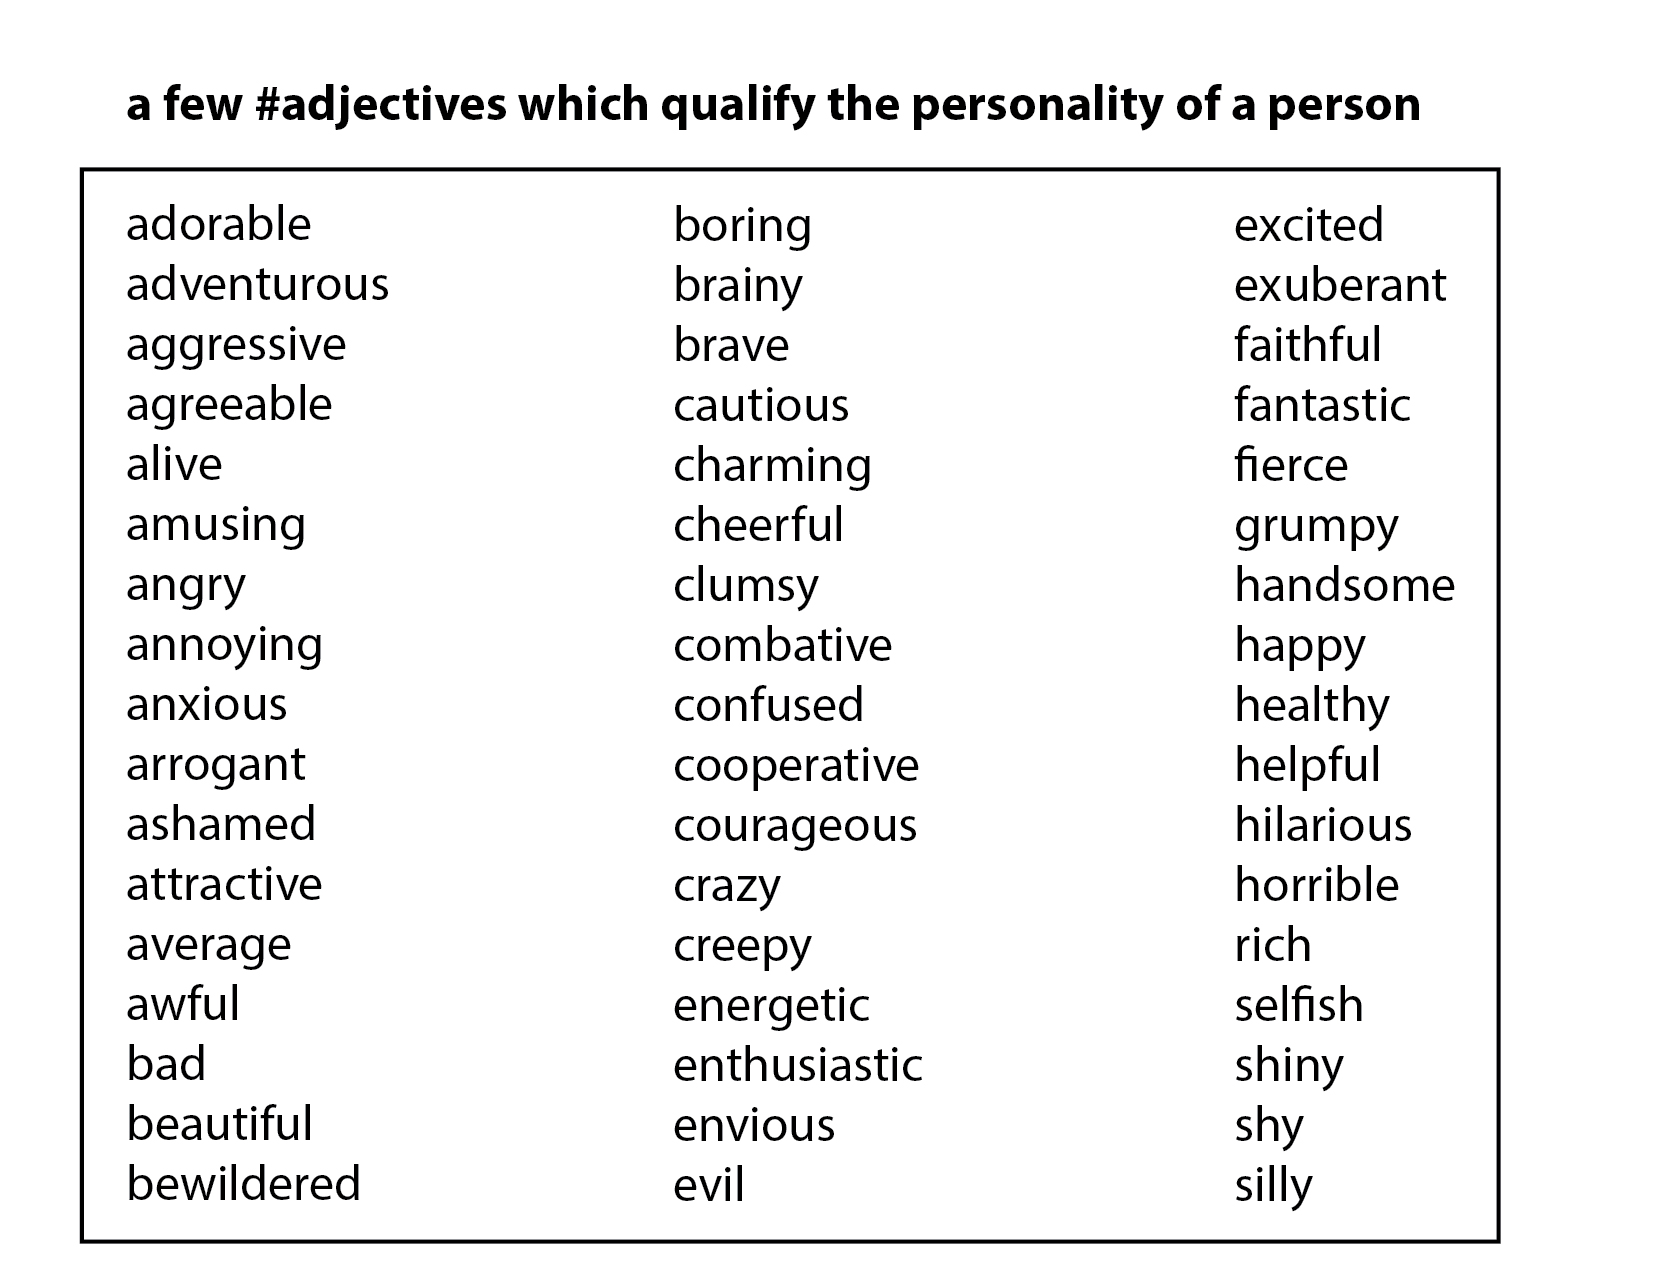 Adjectives прилагательные. Adjectives. Personality прилагательные. Прилагательные adjectives. Прилагательное на английском.